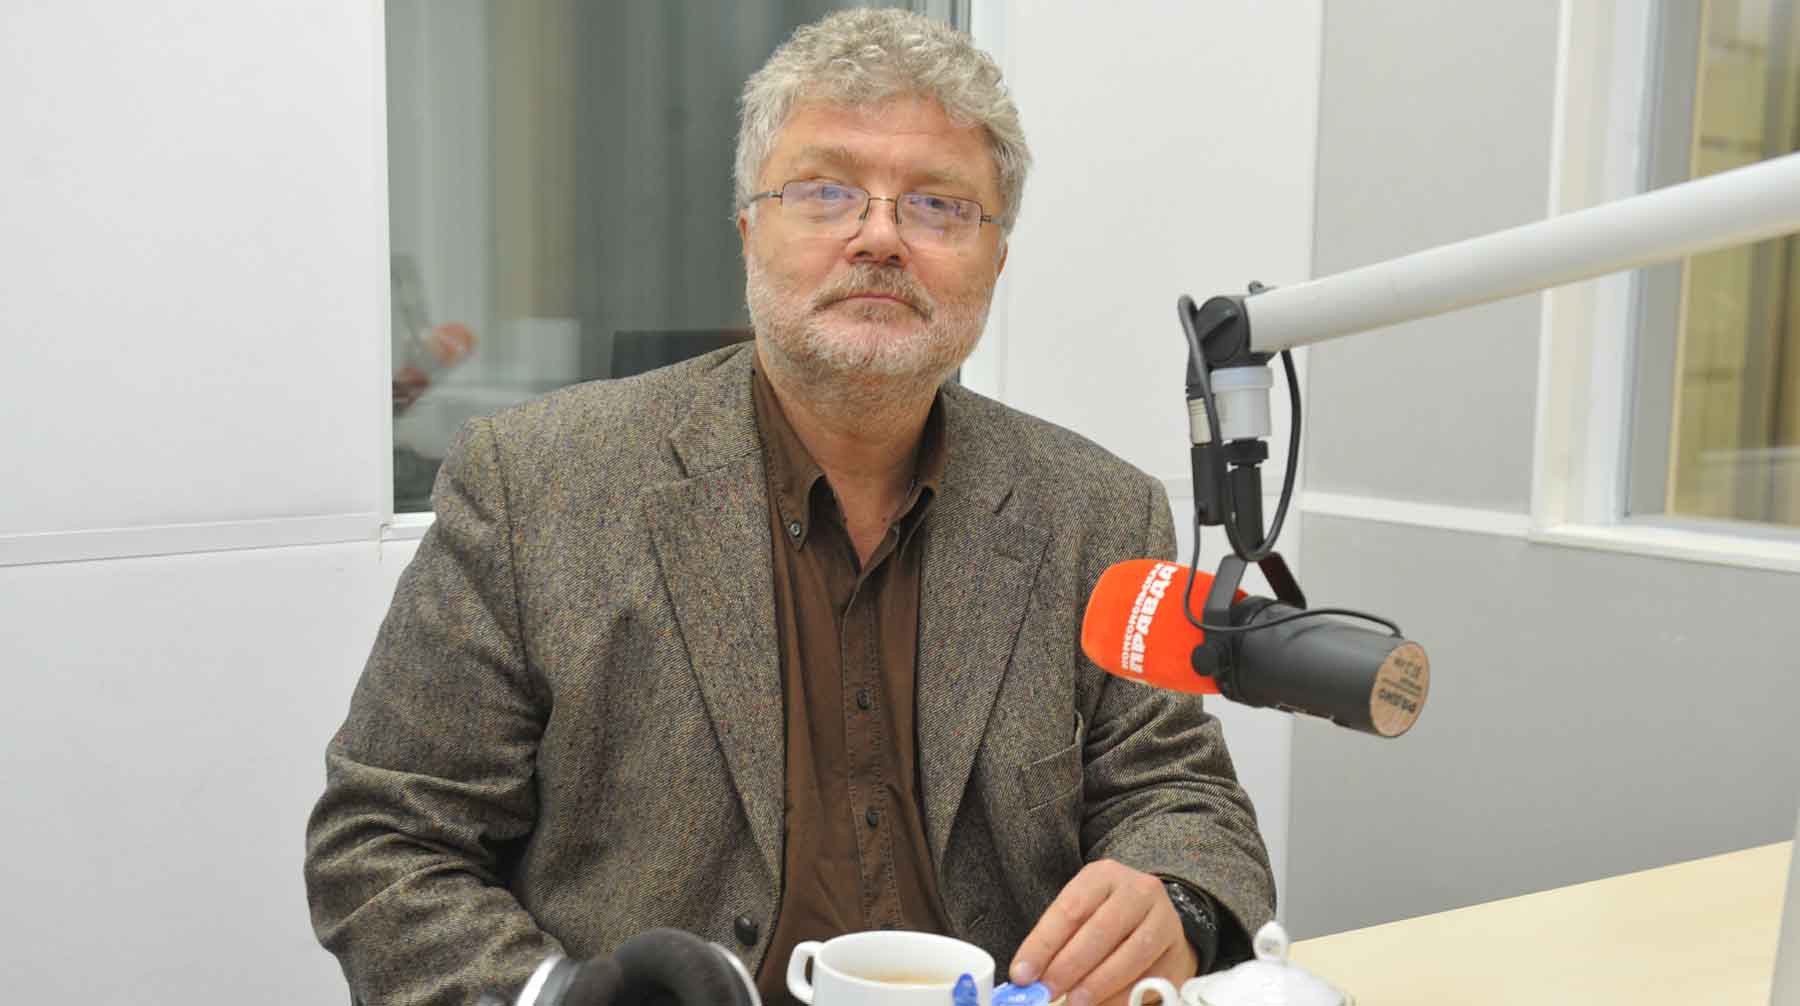 Юрий Поляков